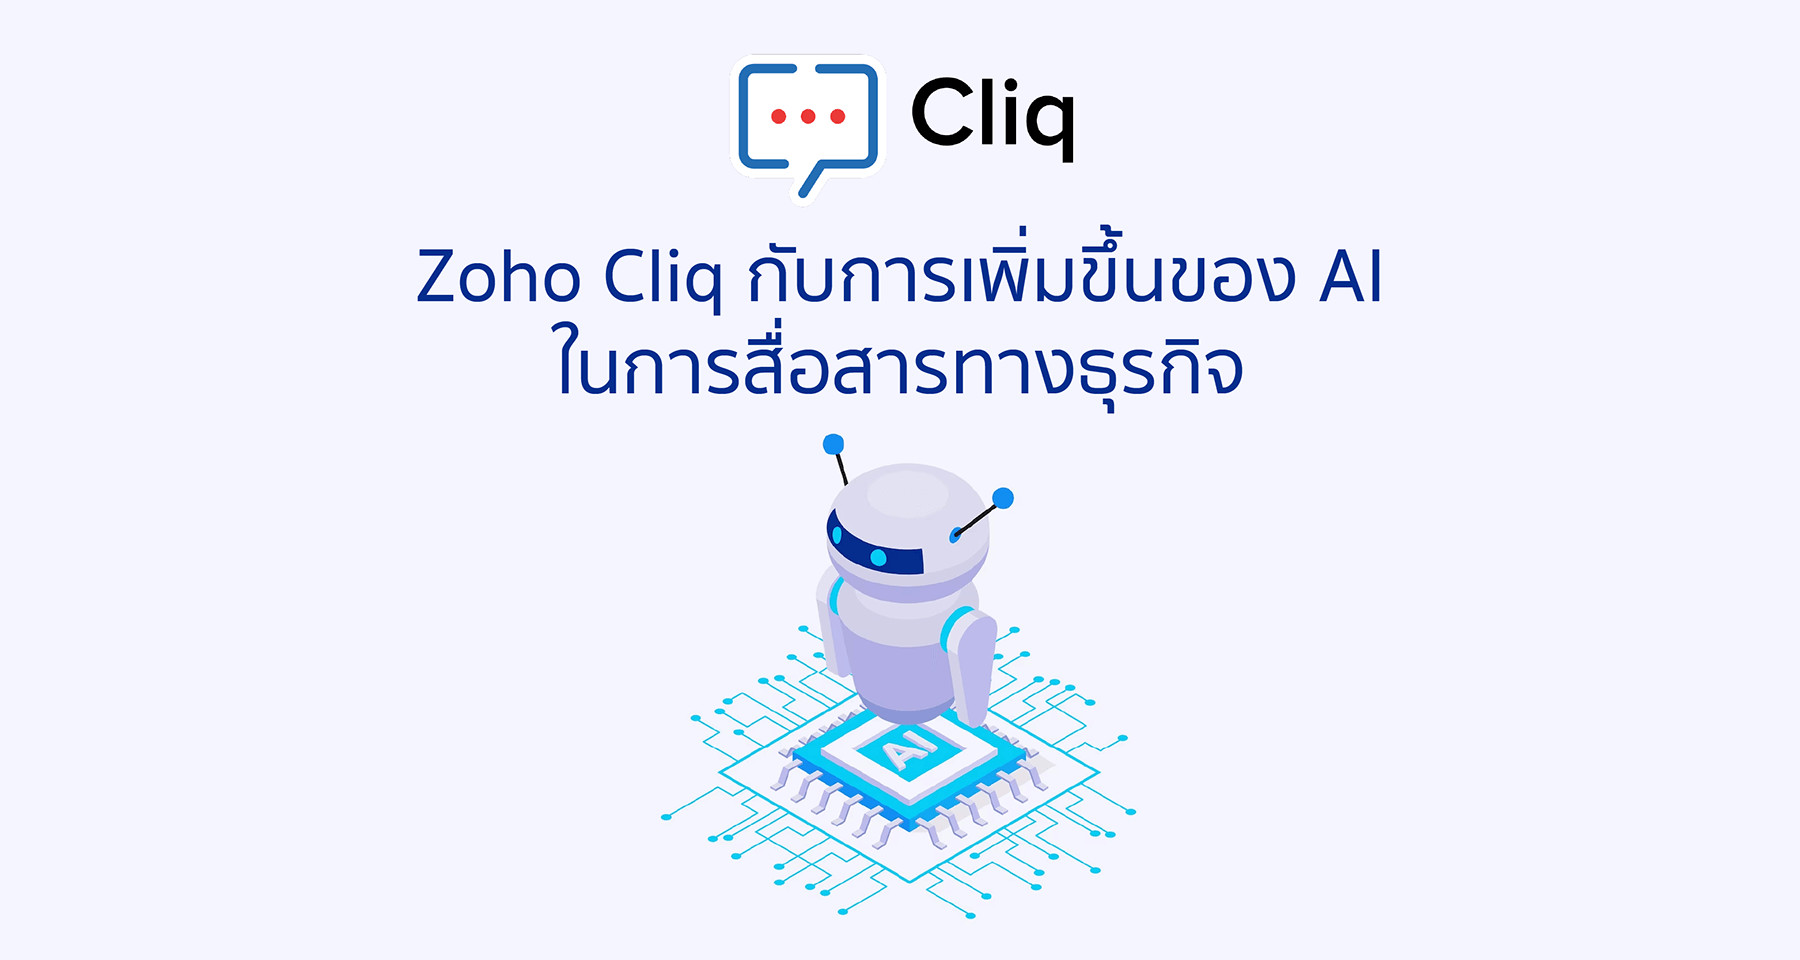 Zoho Cliq กับการเพิ่มขึ้นของ AI ในการสื่อสารทางธุรกิจ